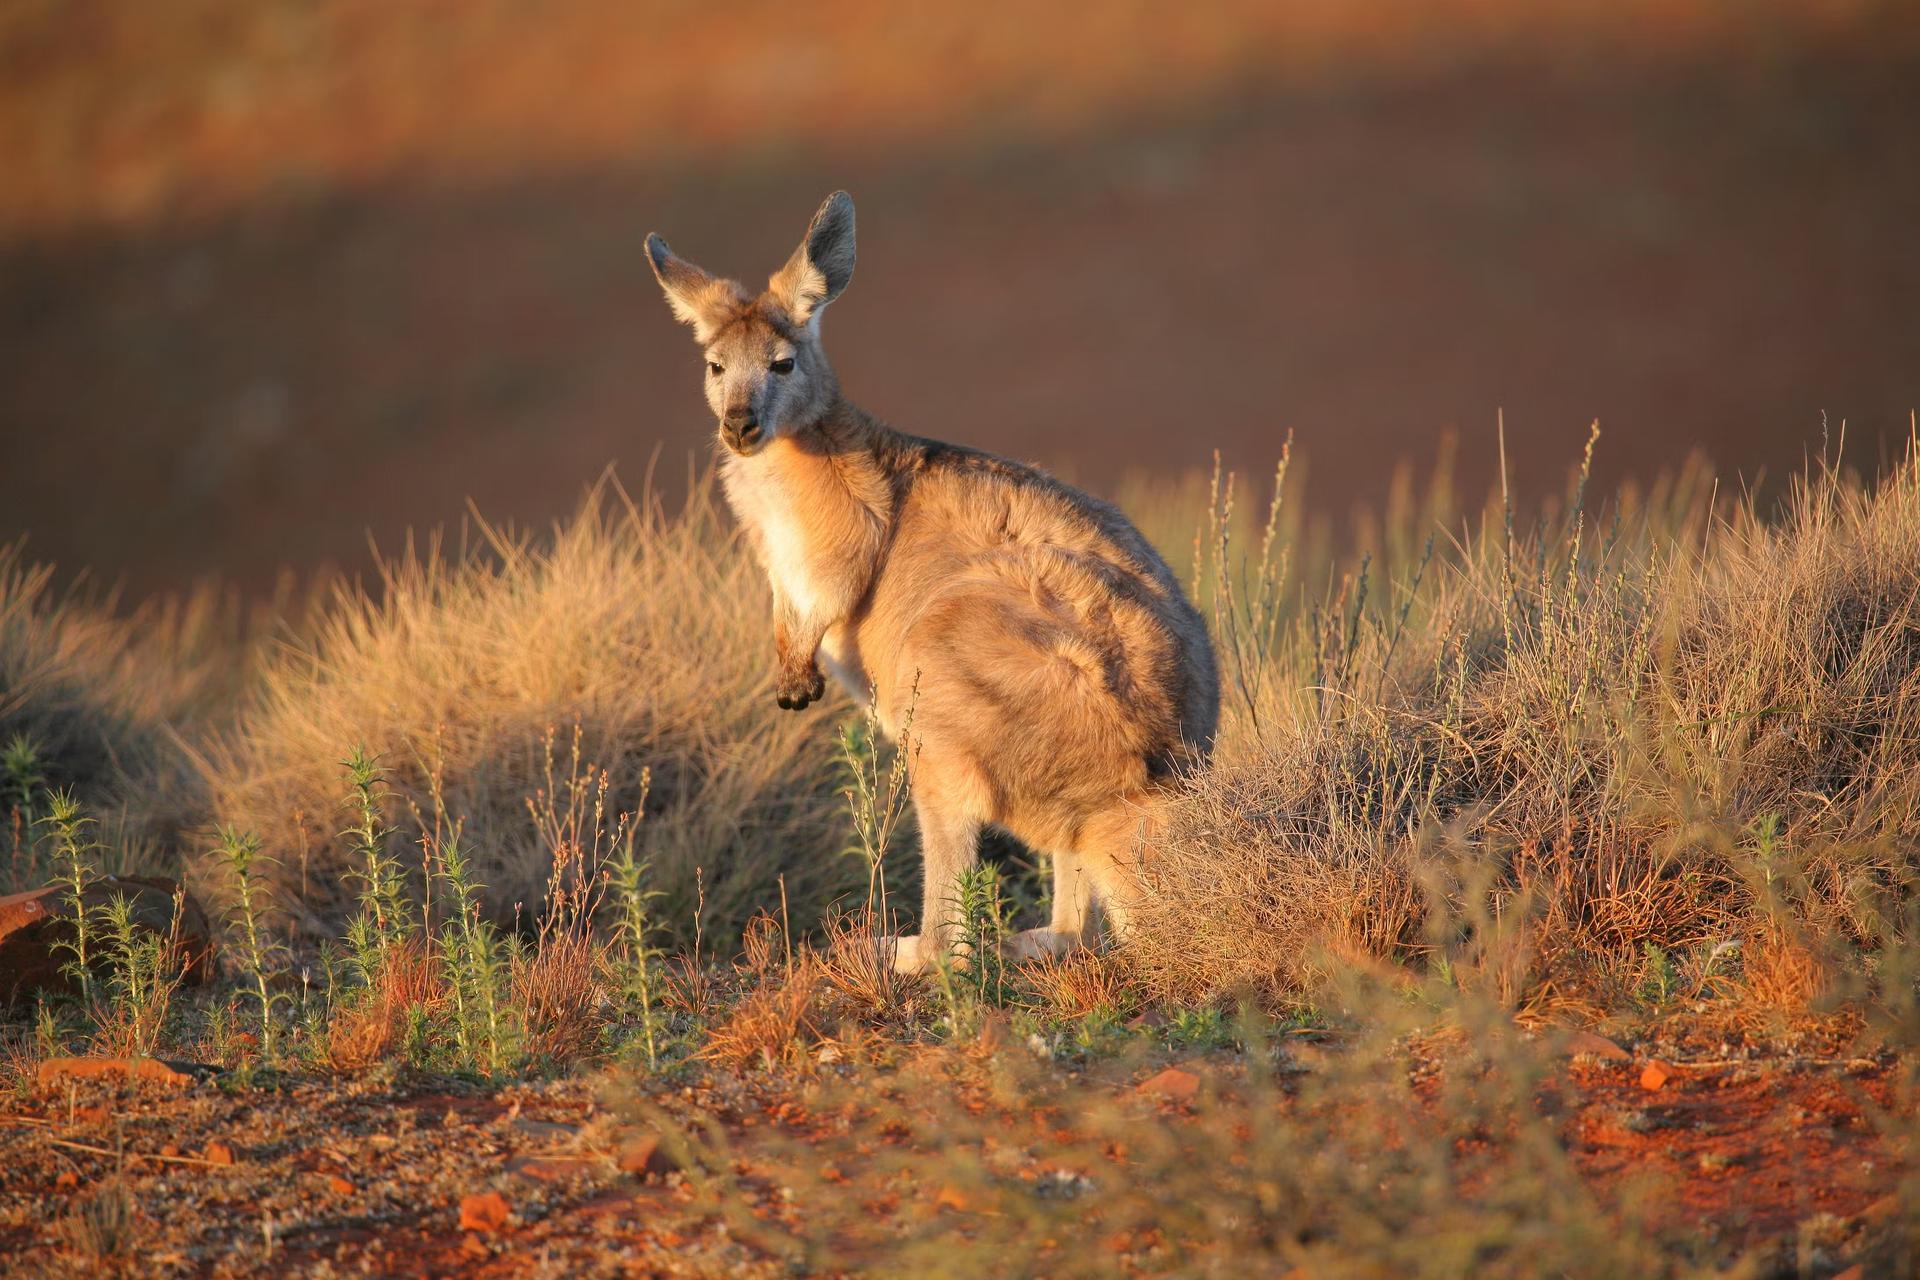 Kangaroo in the wild in the Flinders Ranges. South Australia.